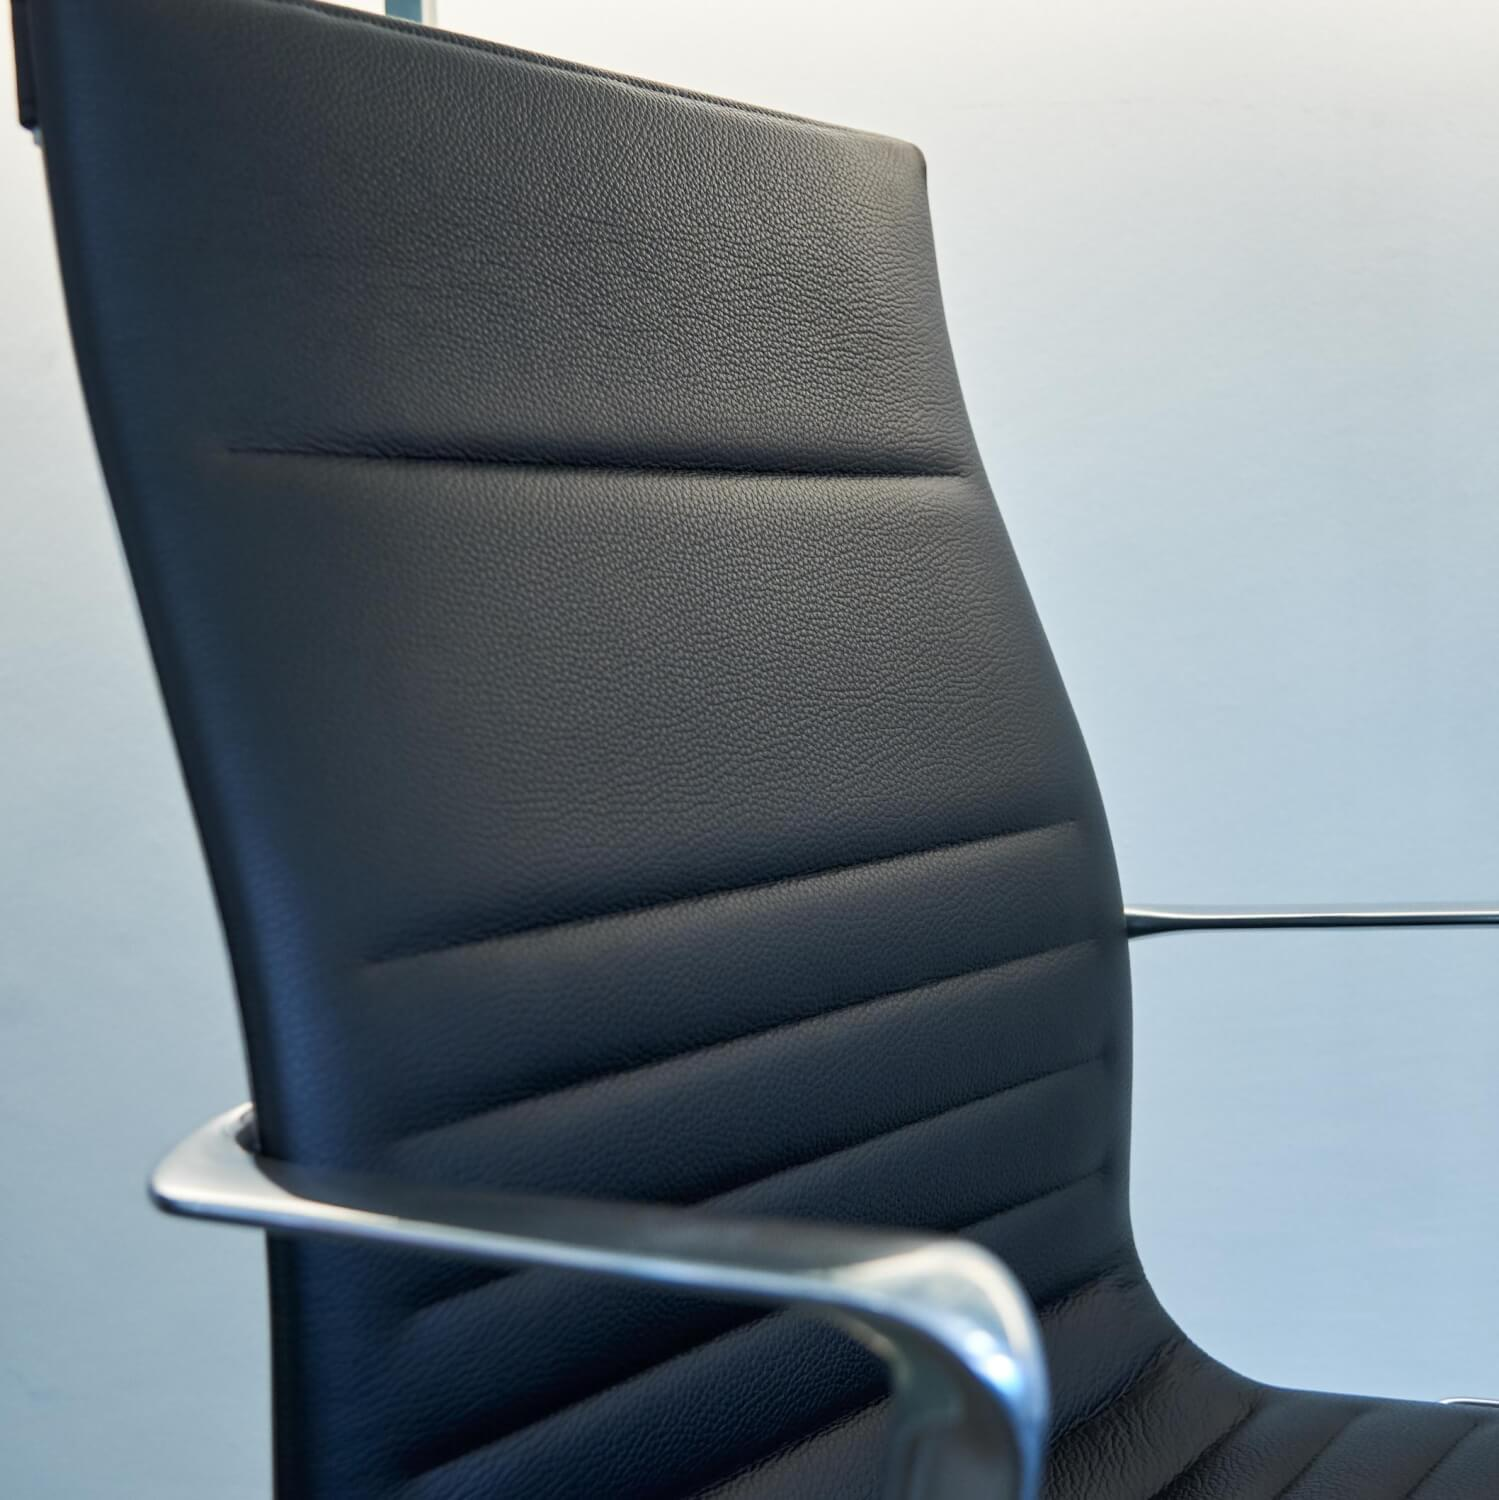 Bürostuhl Una Management Hoher Rücken Bezug Leder 901 Schwarz Gestell Aluminium Poliert 5 Stern Fuß Auf Rollen